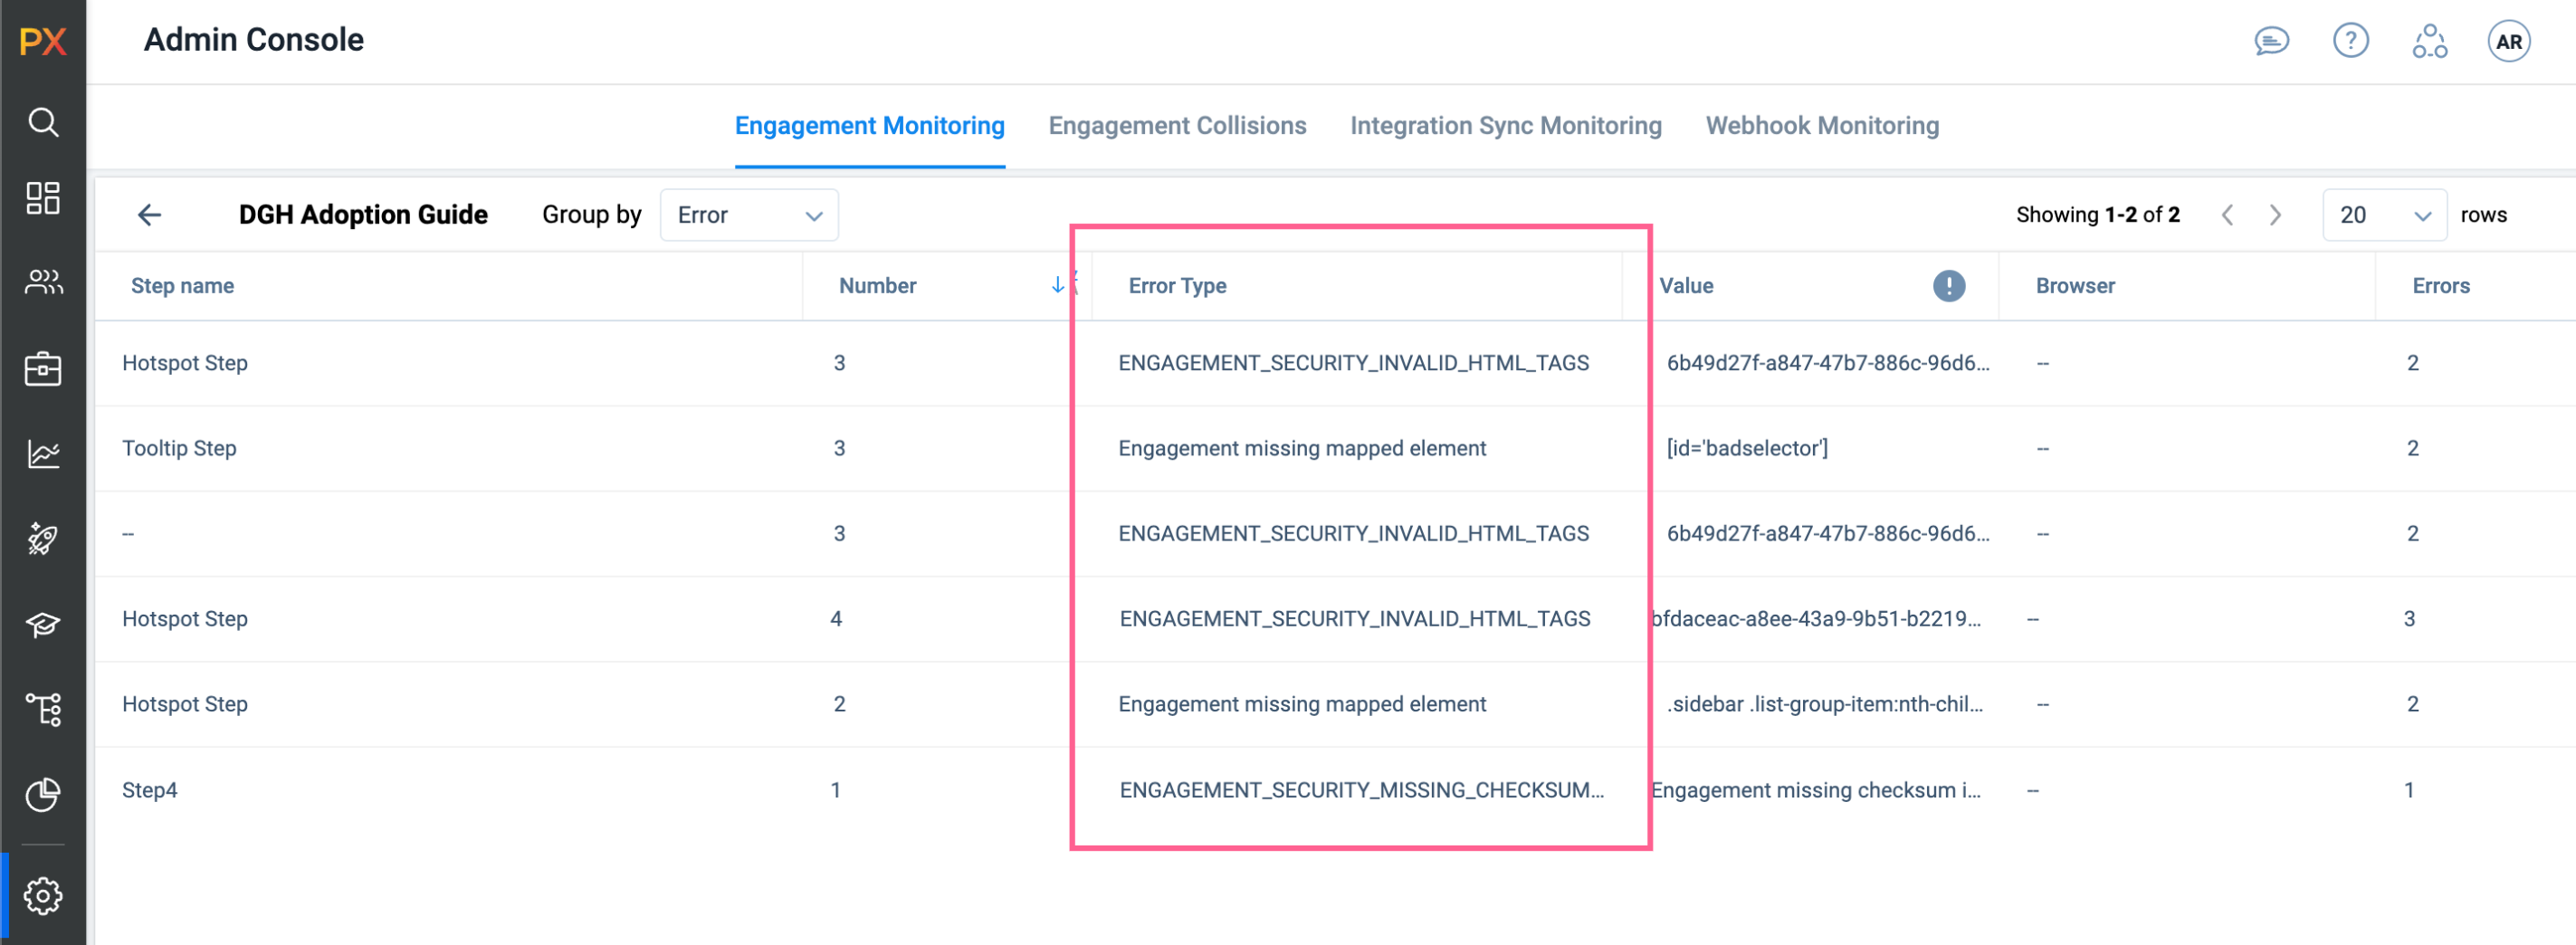 Admin_Engagement Monitoring.png